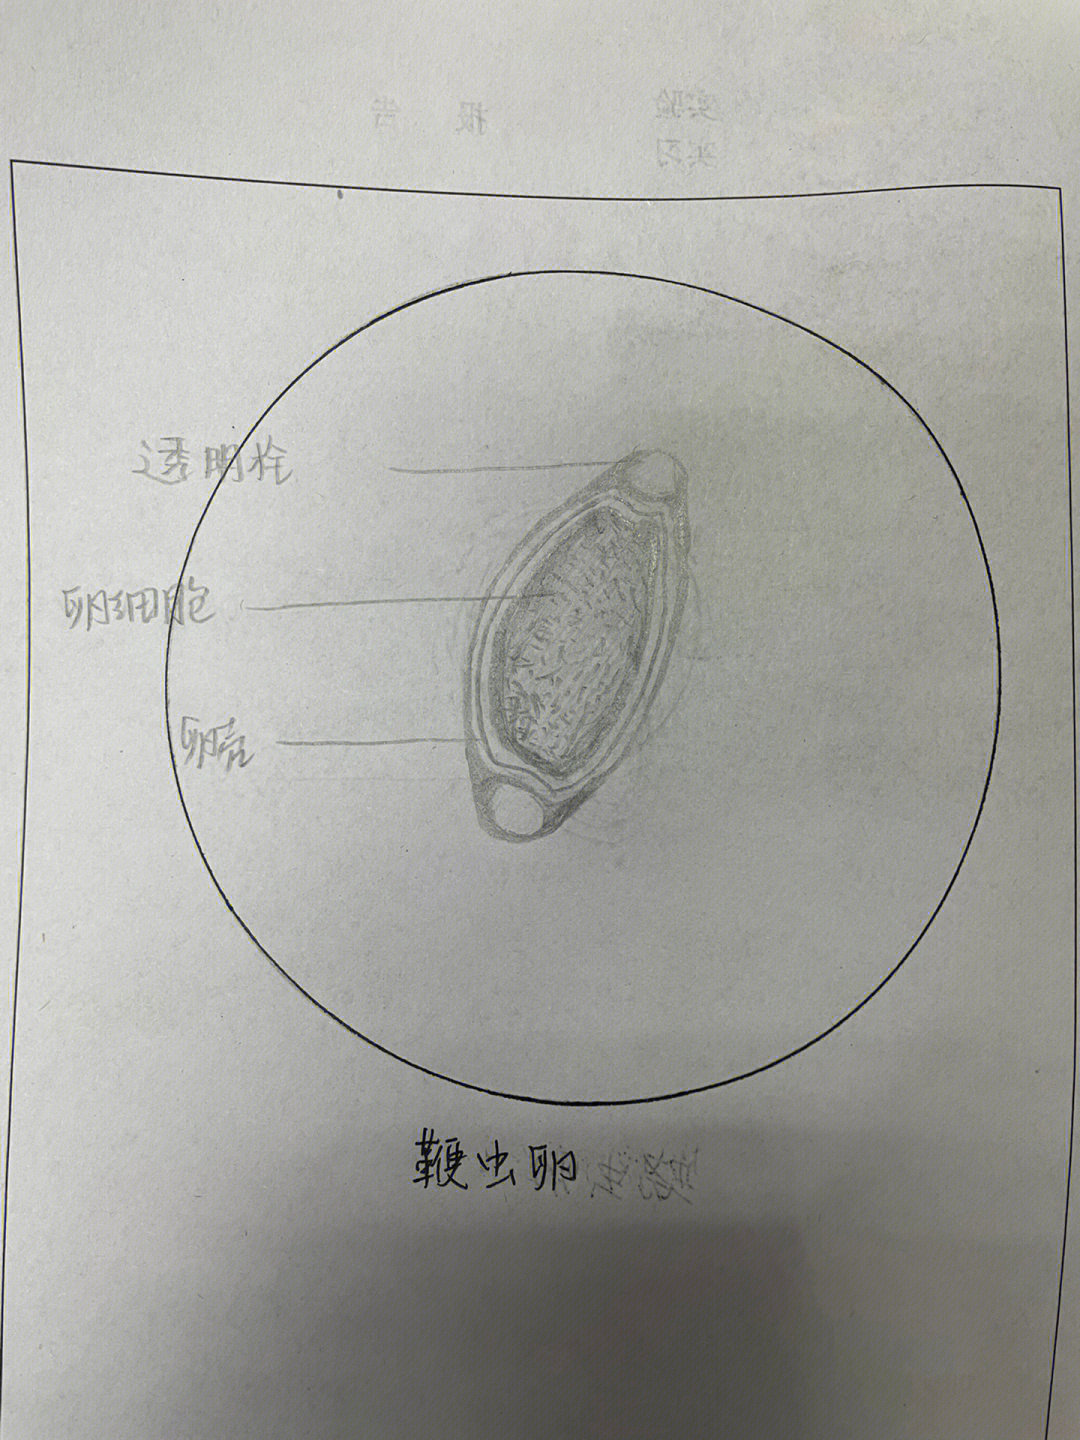 旋毛虫囊包手绘图片